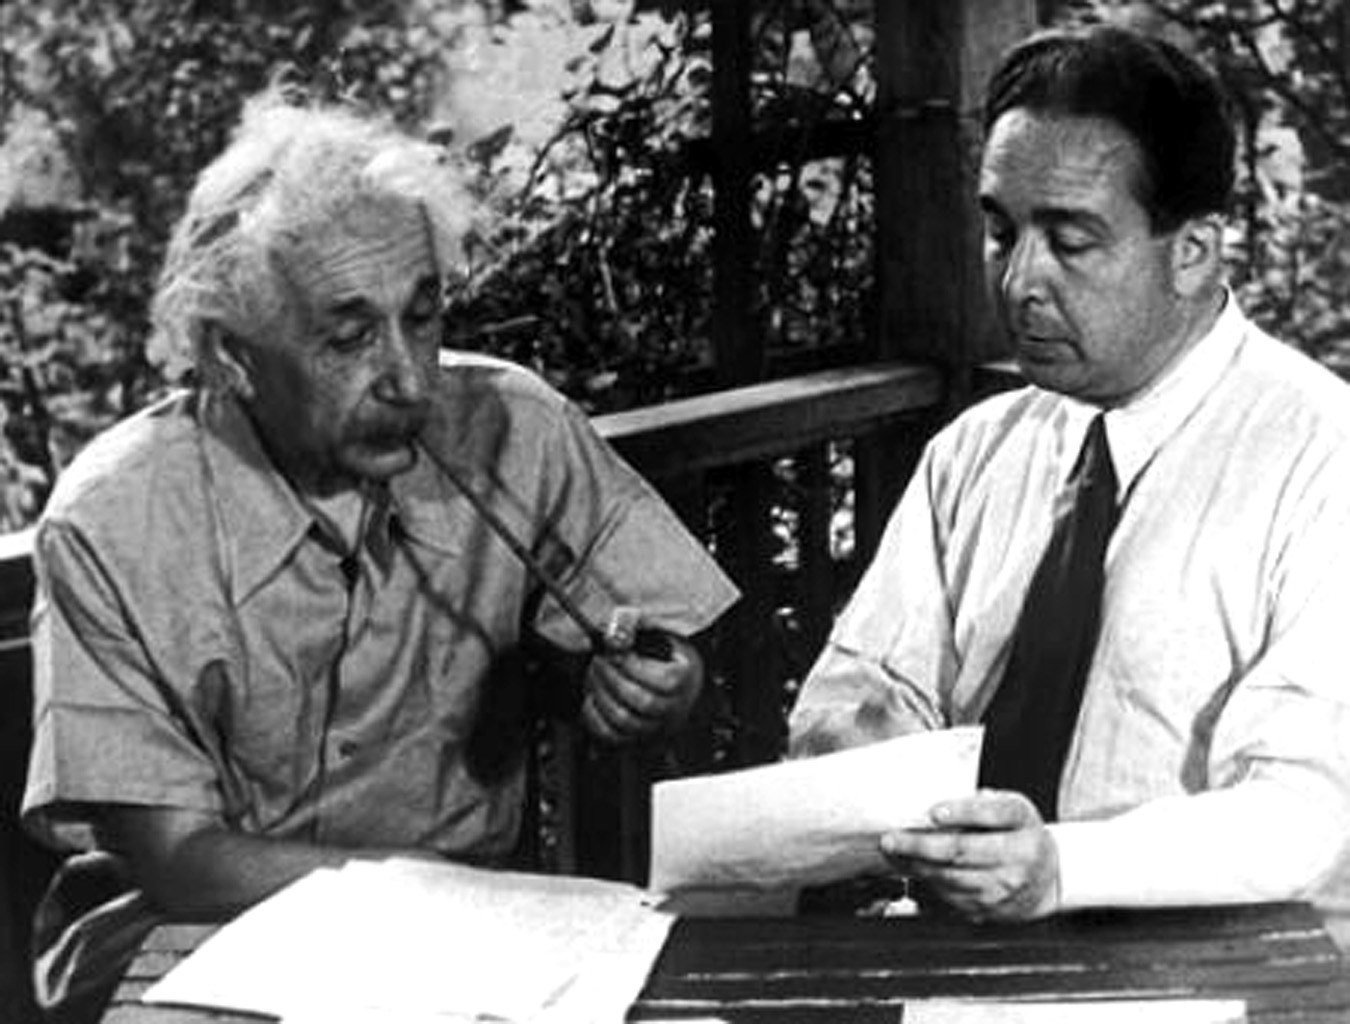 Einstein'ın ilk nükleer bombanın yapımına neden yardım etmedi?